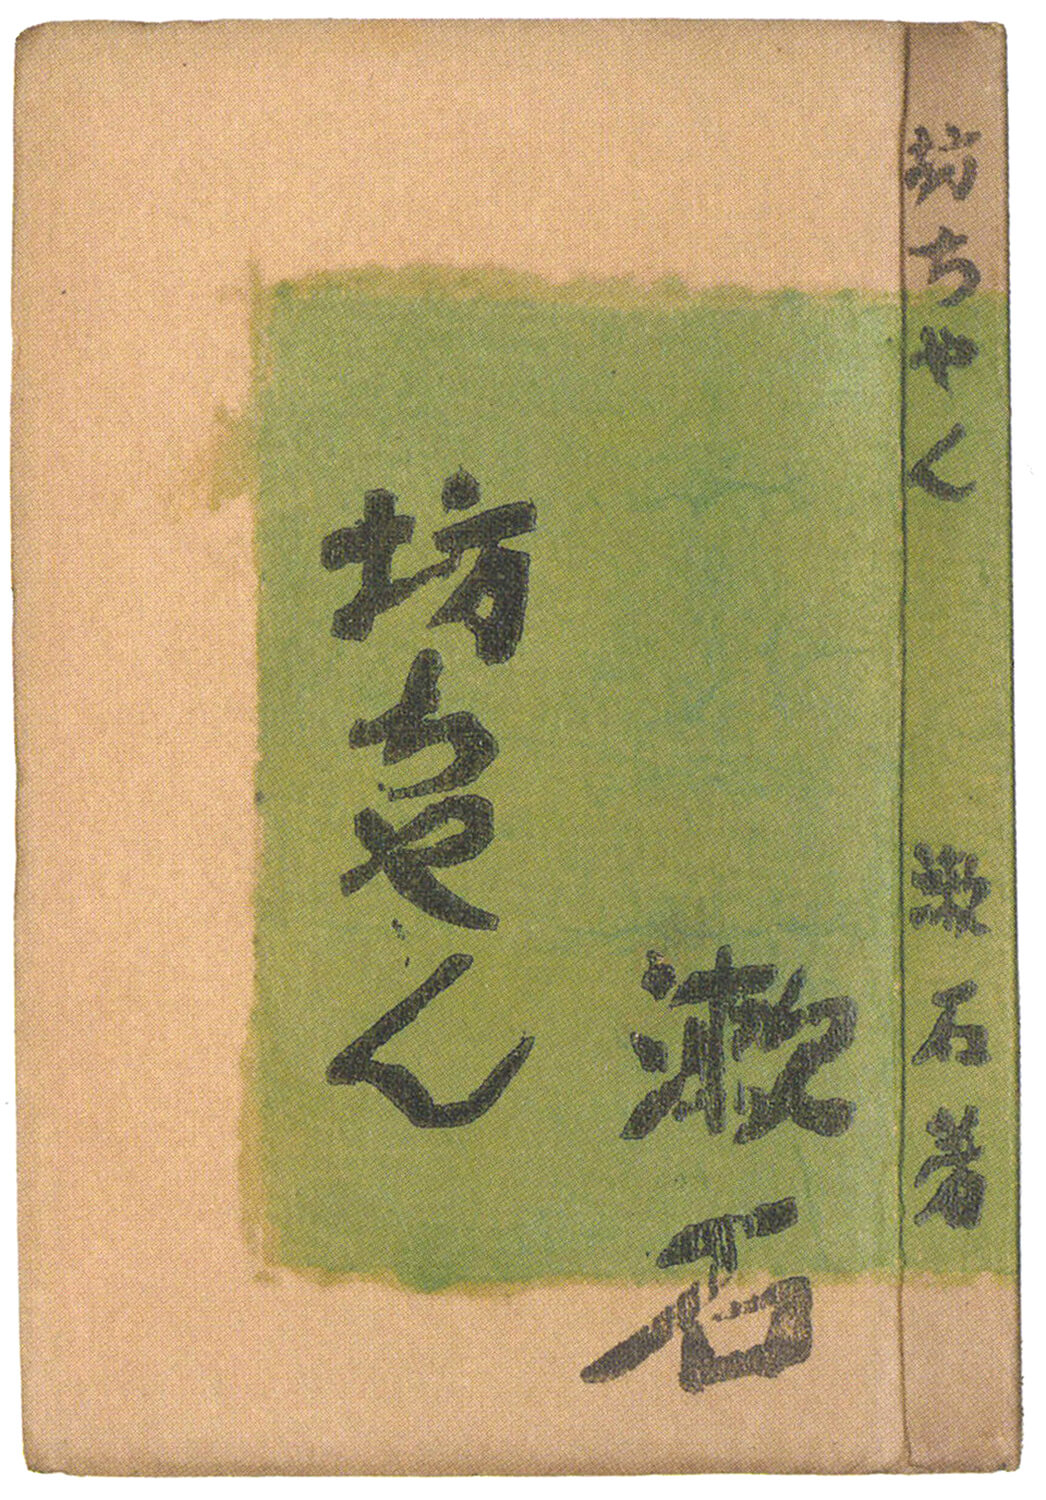 草合 縮刷版 夏目漱石 春陽堂 大正6年4月15日初版